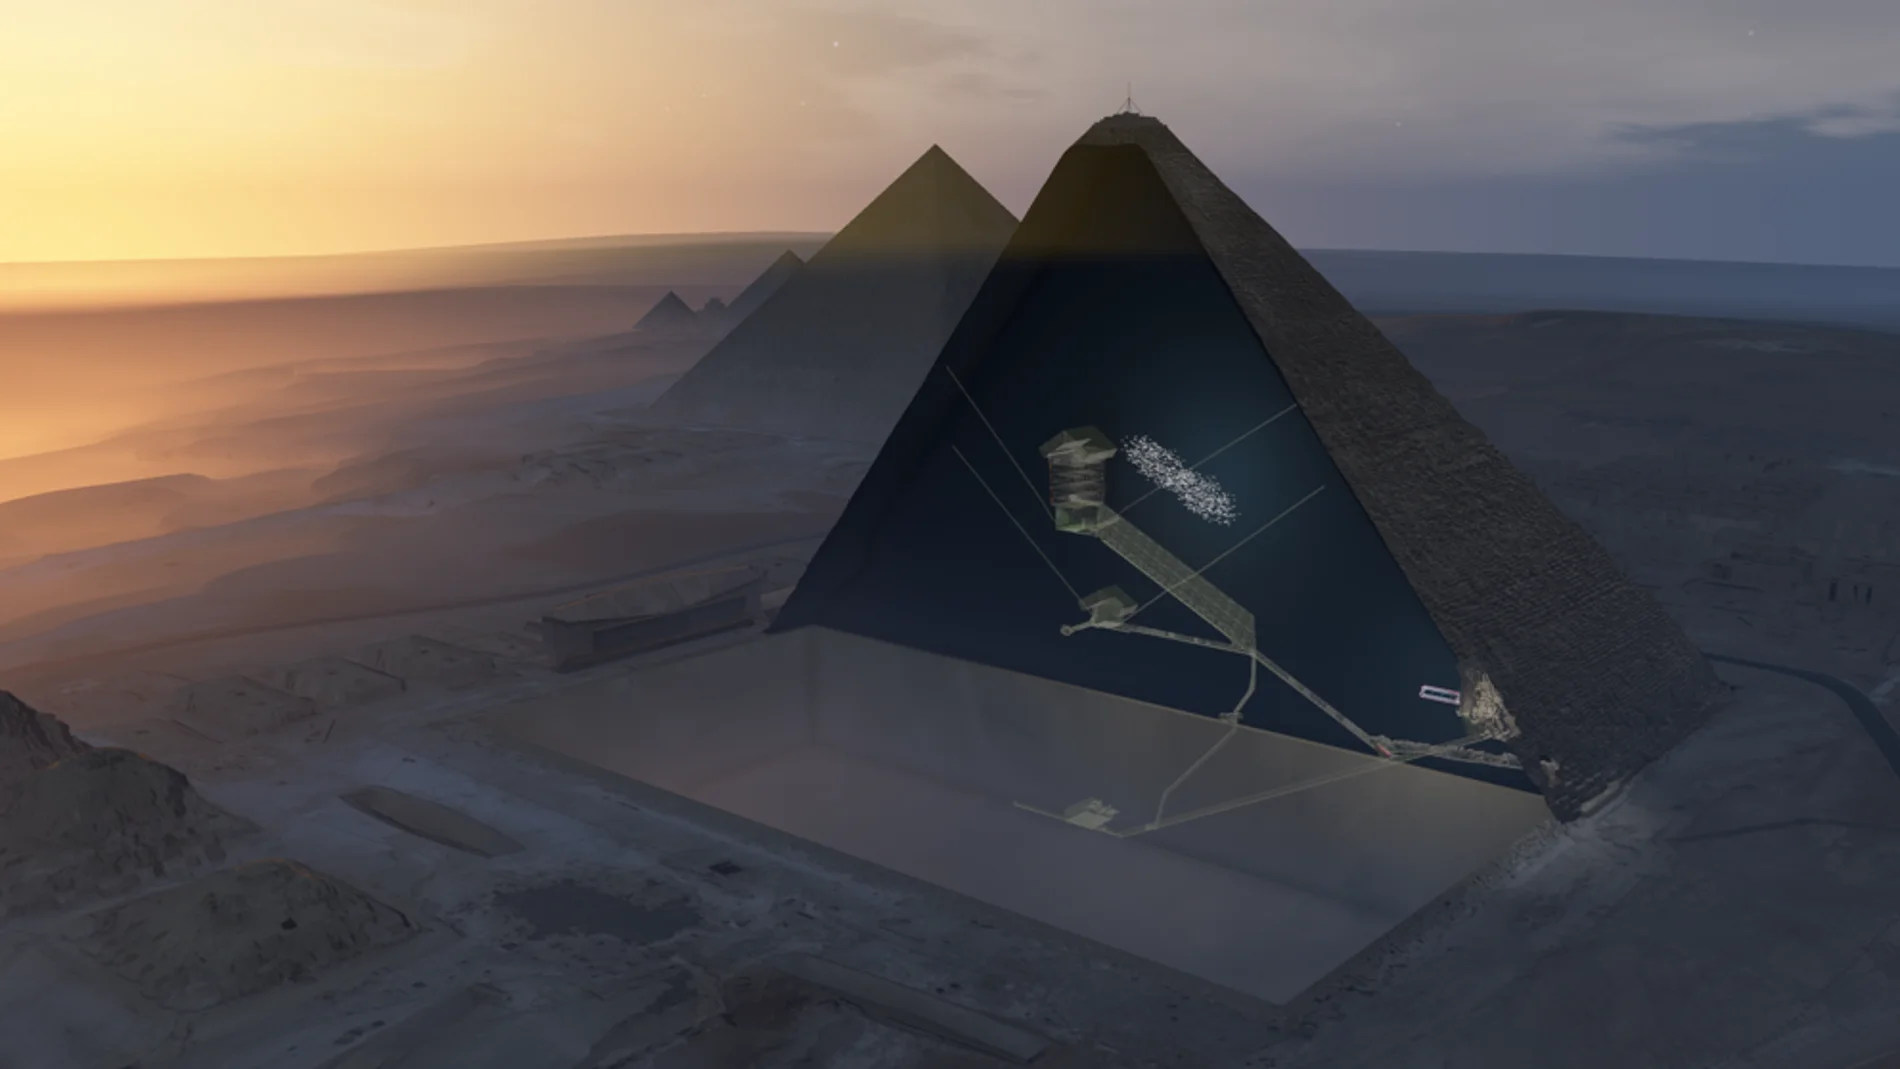 La cámara descubierta en el interior de la pirámide de Keops